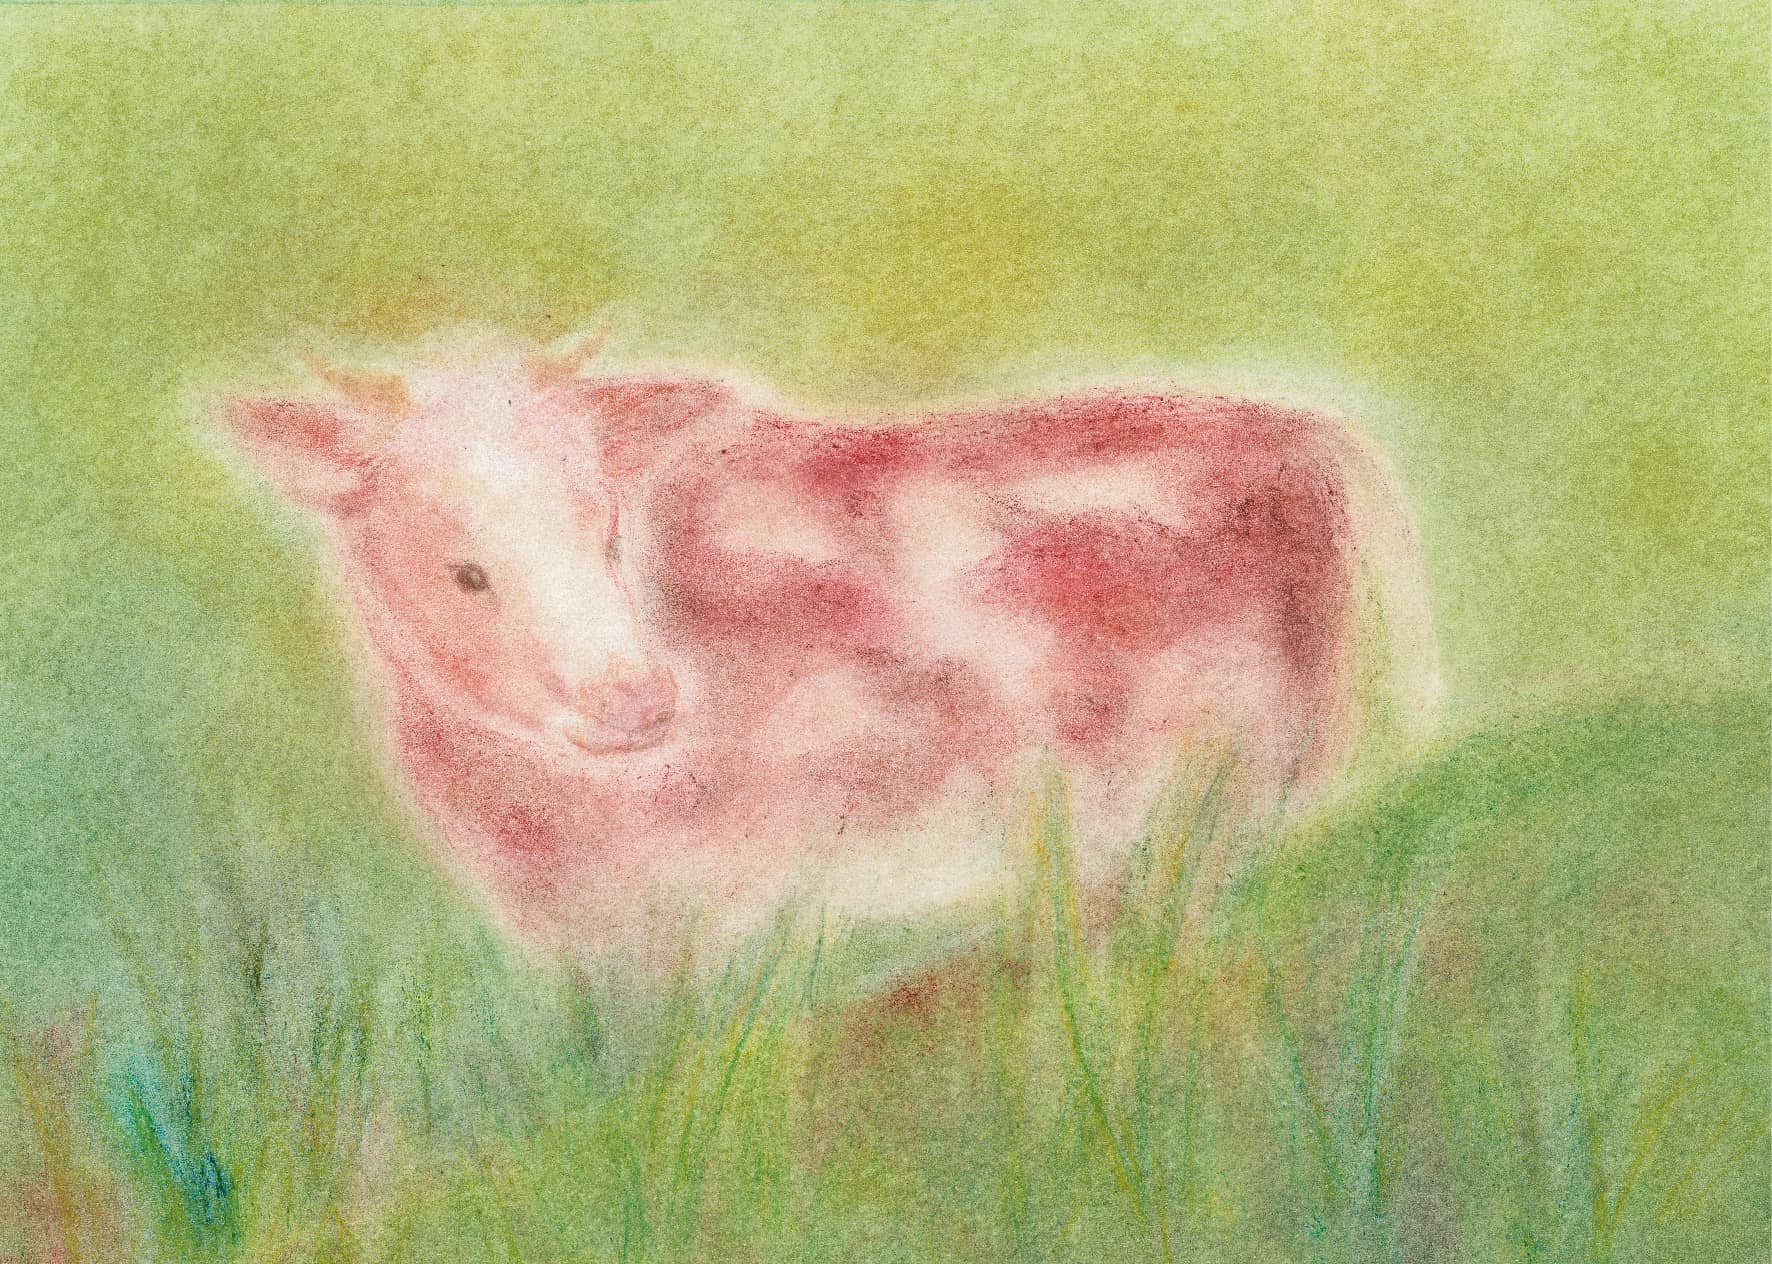 Seccorell-Postkarte "Kuh auf der Weide" zeigt ein friedliches Rind inmitten grüner Natur.